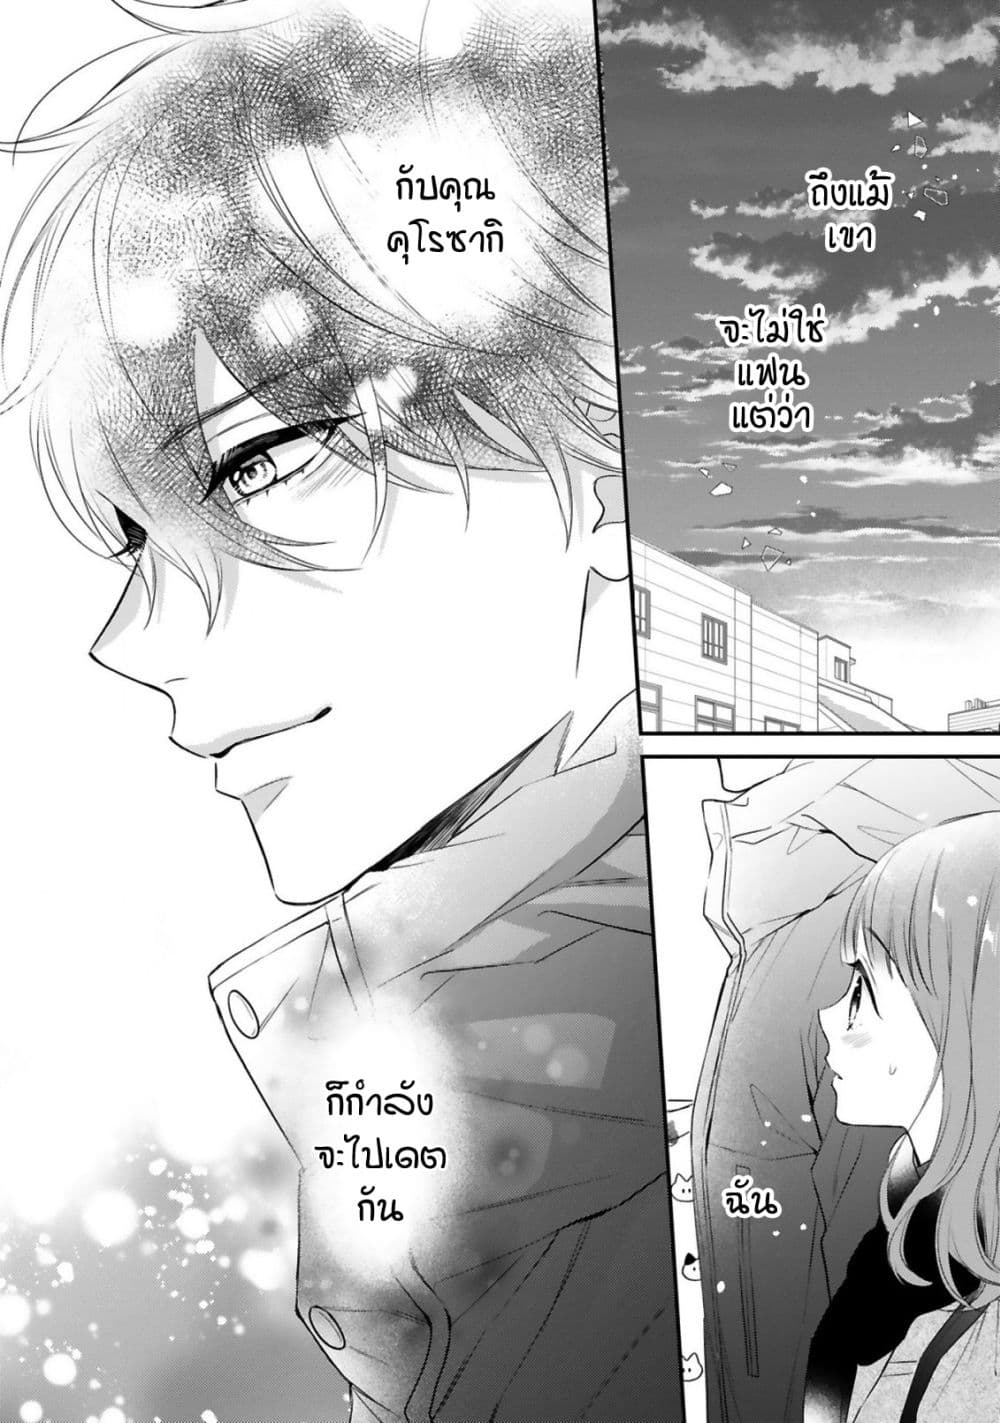 Kurosaki-san no Ichizu na Ai ga Tomaranai รักหมดใจของนายคุโรซากิ 7-ลมพัดดอกไม้ปลิว